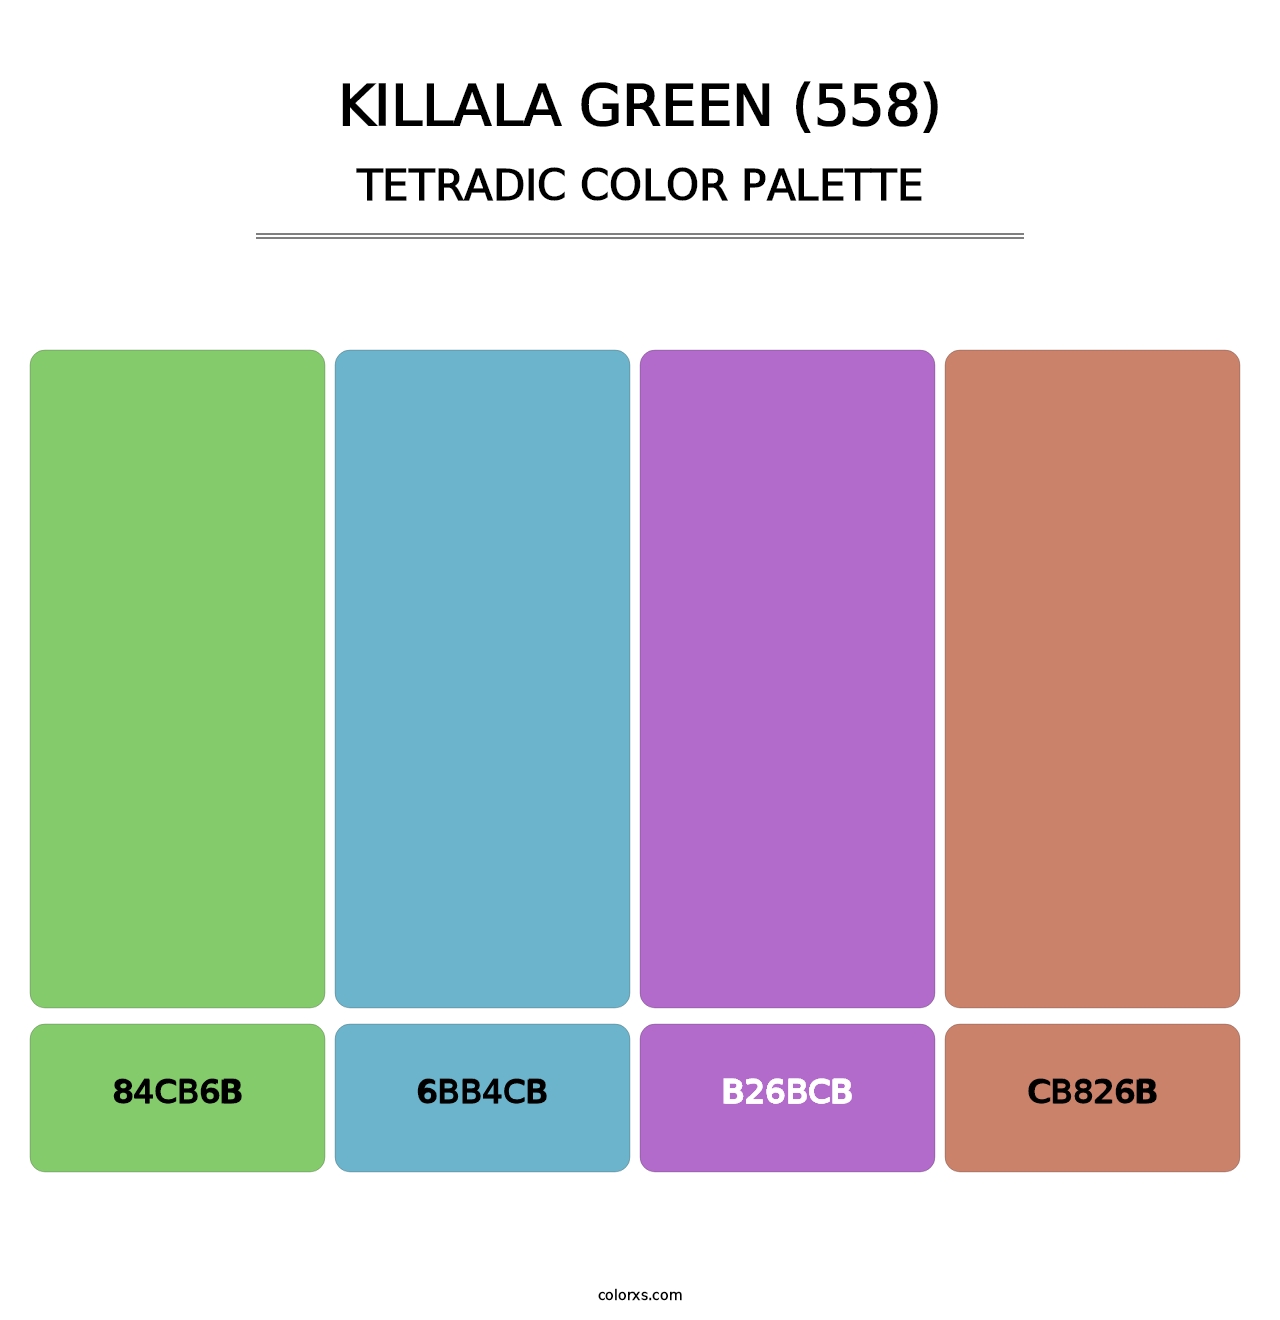 Killala Green (558) - Tetradic Color Palette